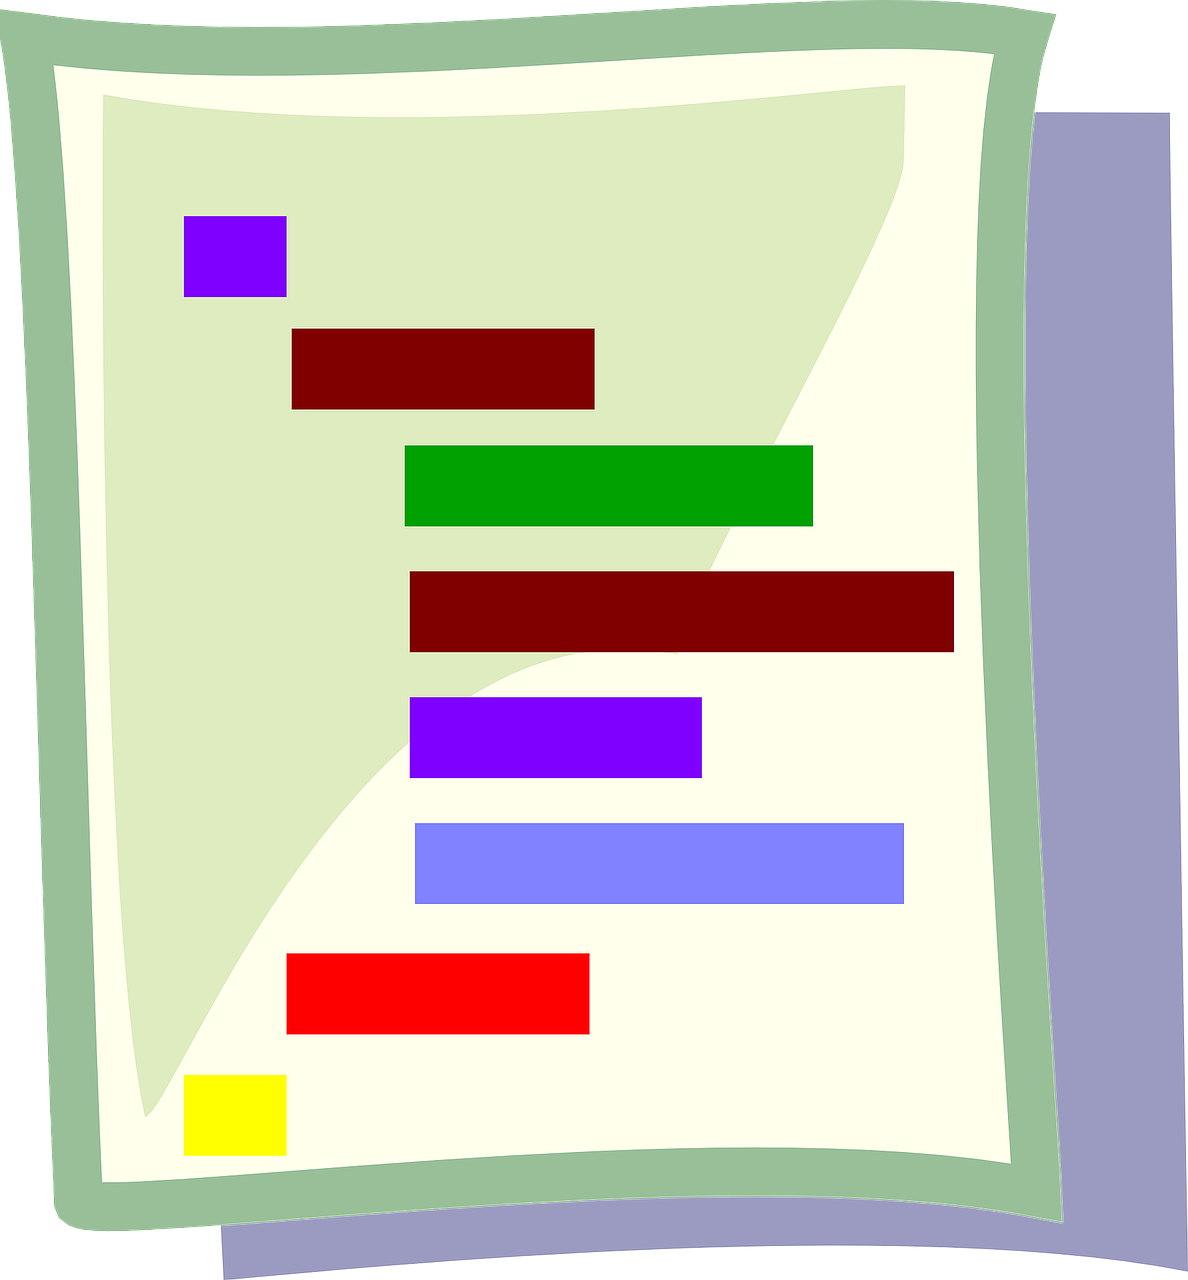 Aparece el dibujo de una hoja con unos rectángulos de colores que indican un esquema y subrayado.